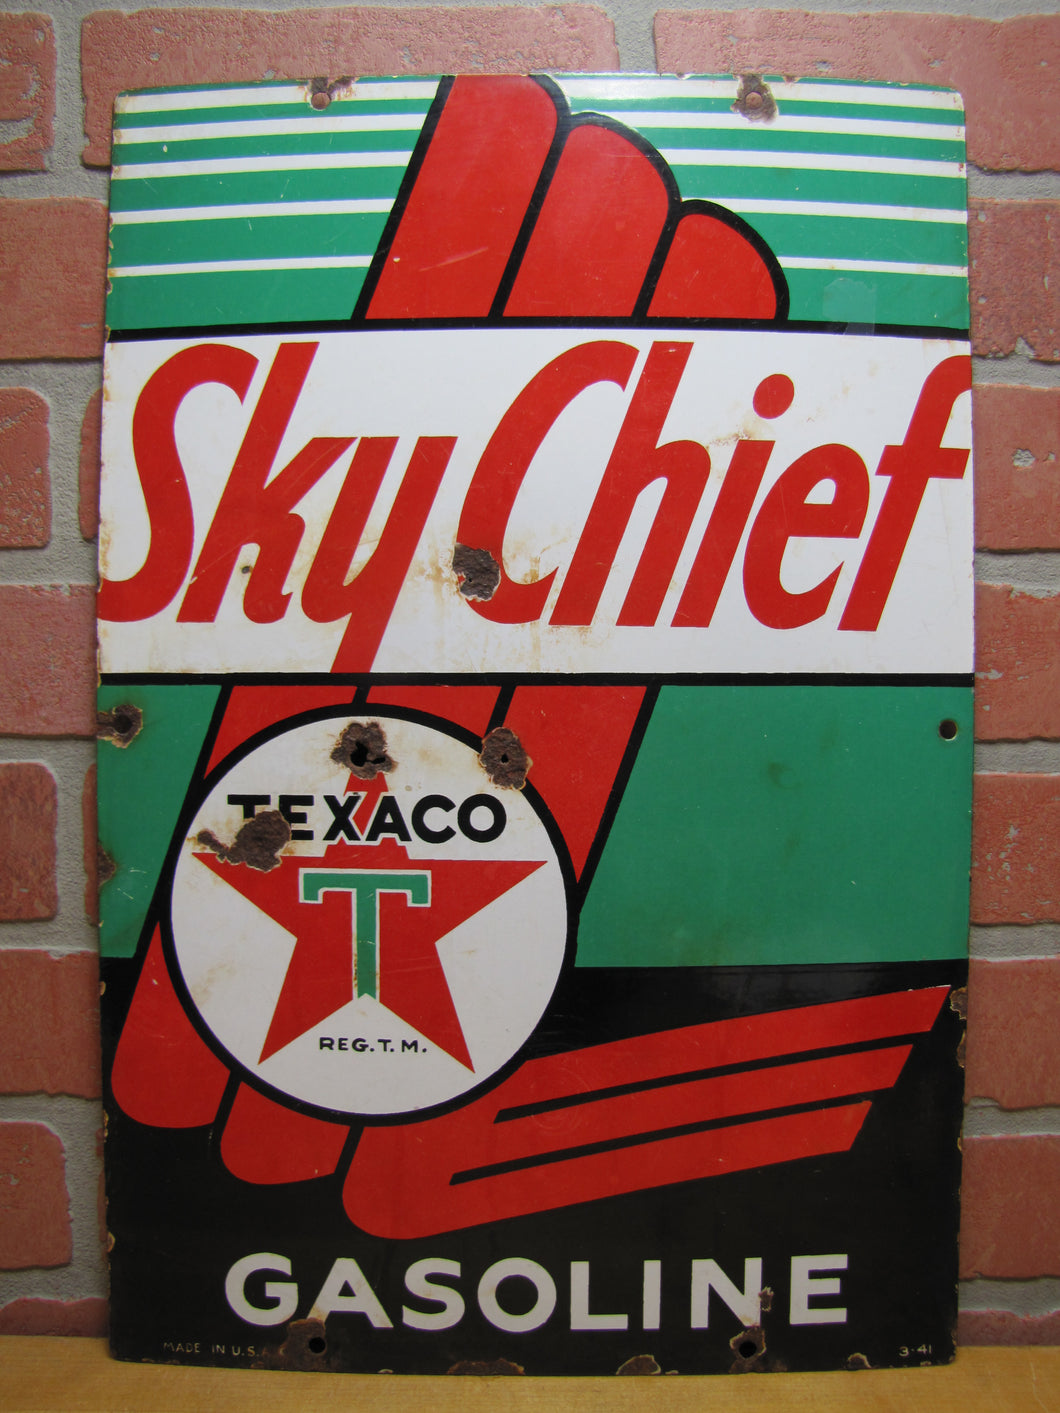 1941 TEXACO SKY CHIEF GASOLINE 3-41 Made in USA Original Old WW2 Era Porcelain Sign Gas Station Repair Shop Petroliana Advertising